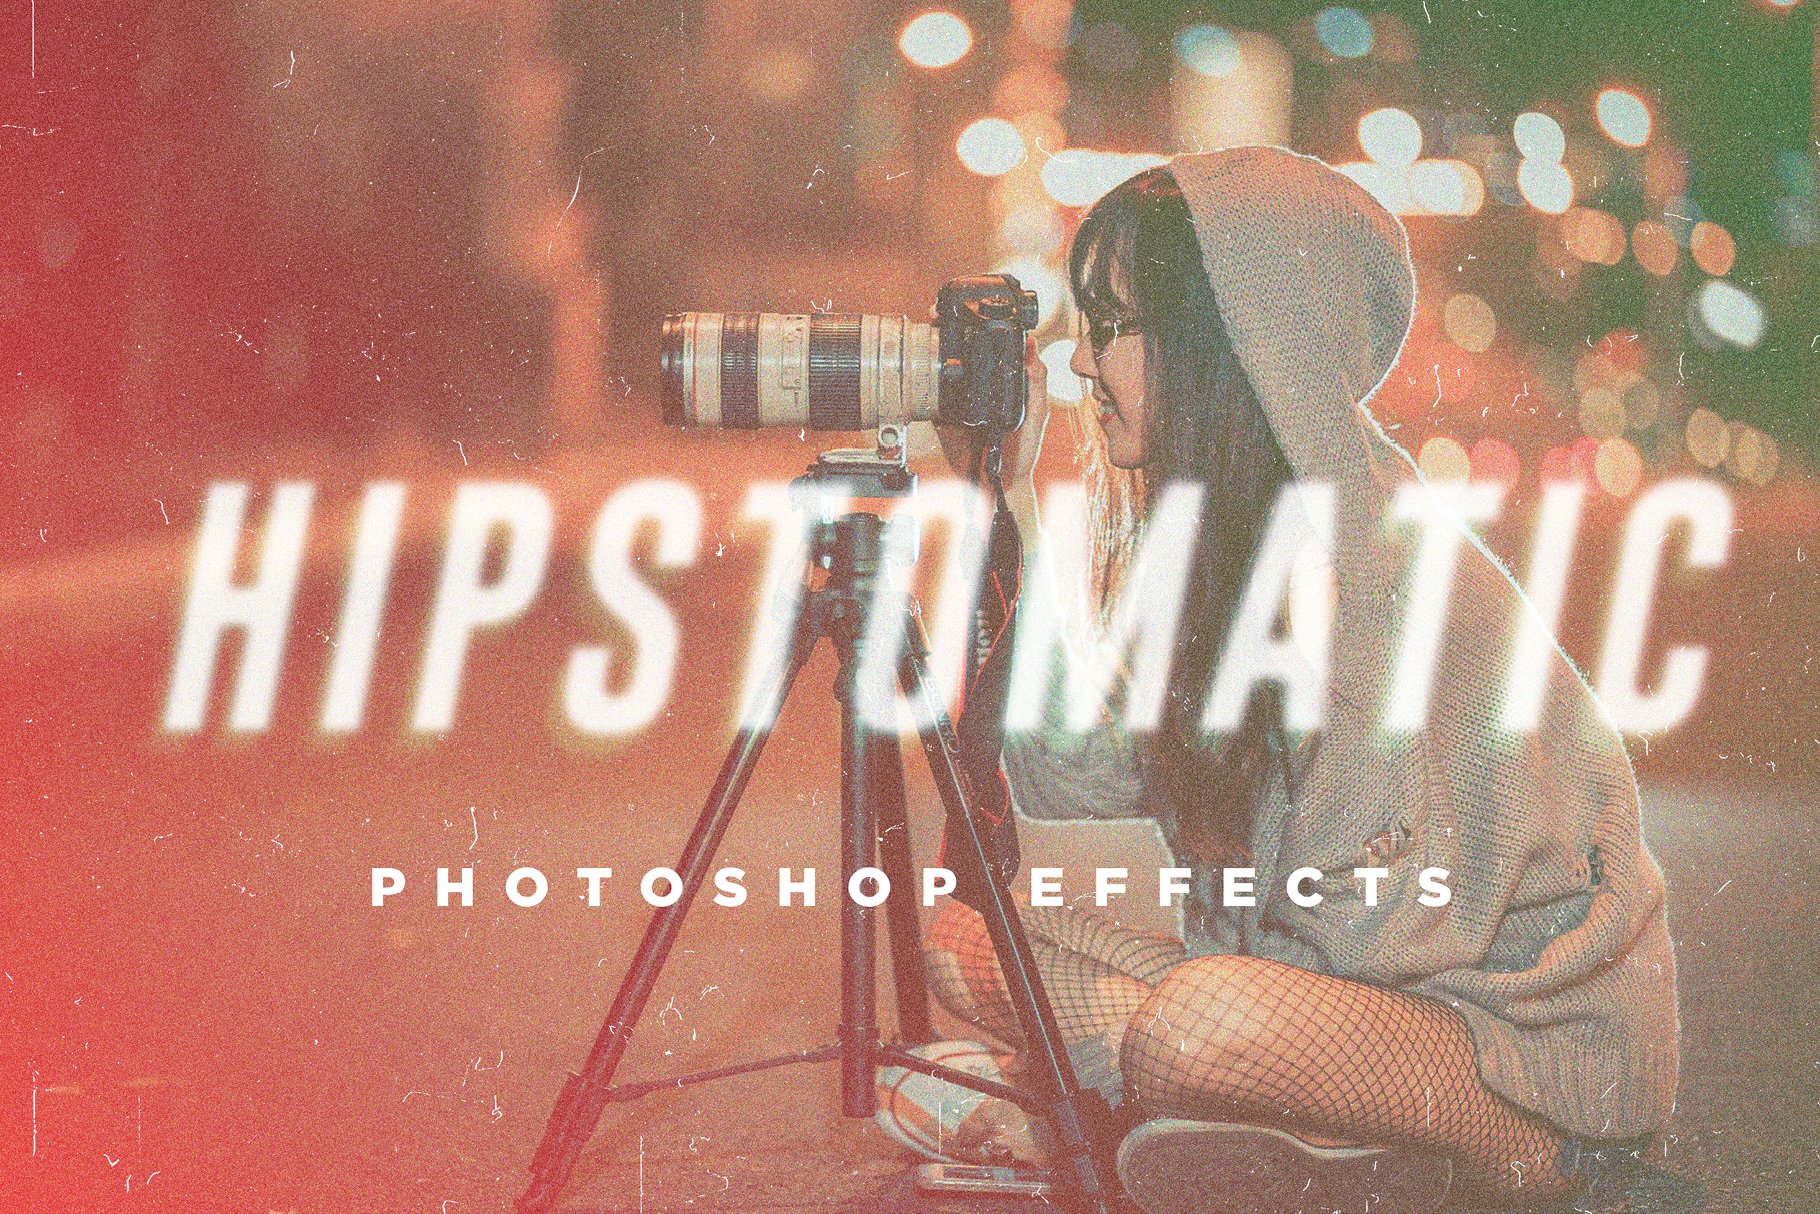 Hipstomatic Photoshop Effectscover image.